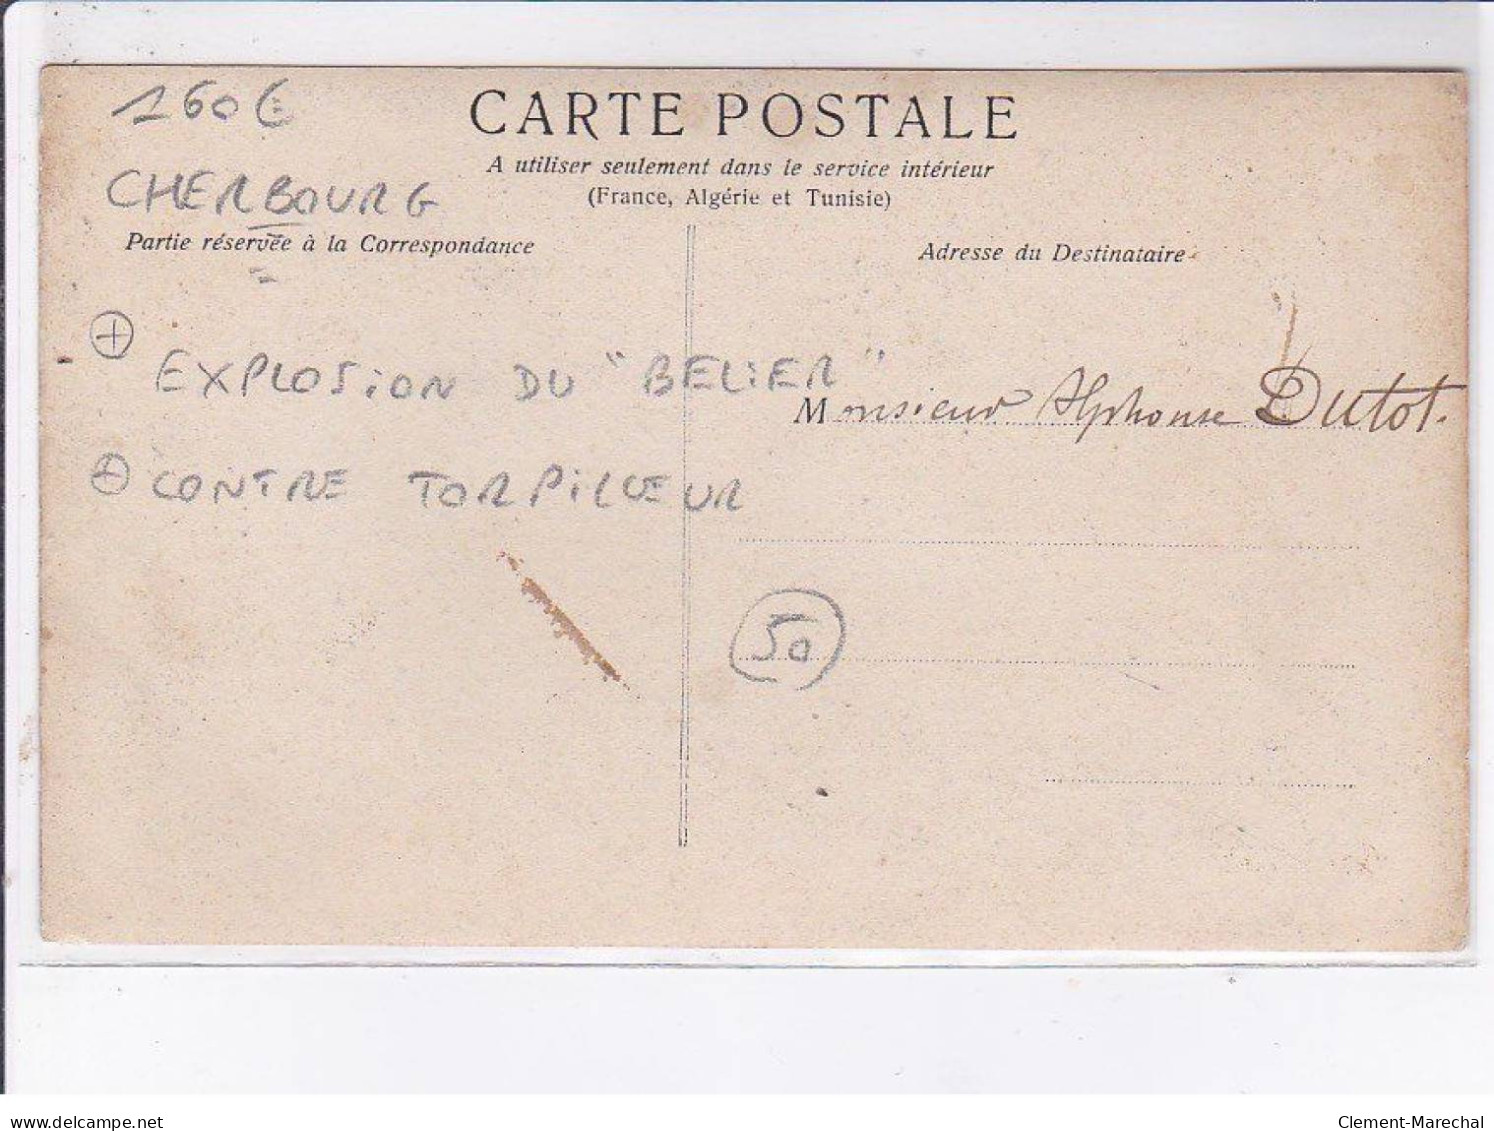 CHERBOURG: Explosion Du "belier", Contre Torpilleur, 17 Septembre 1904 - Très Bon état - Cherbourg